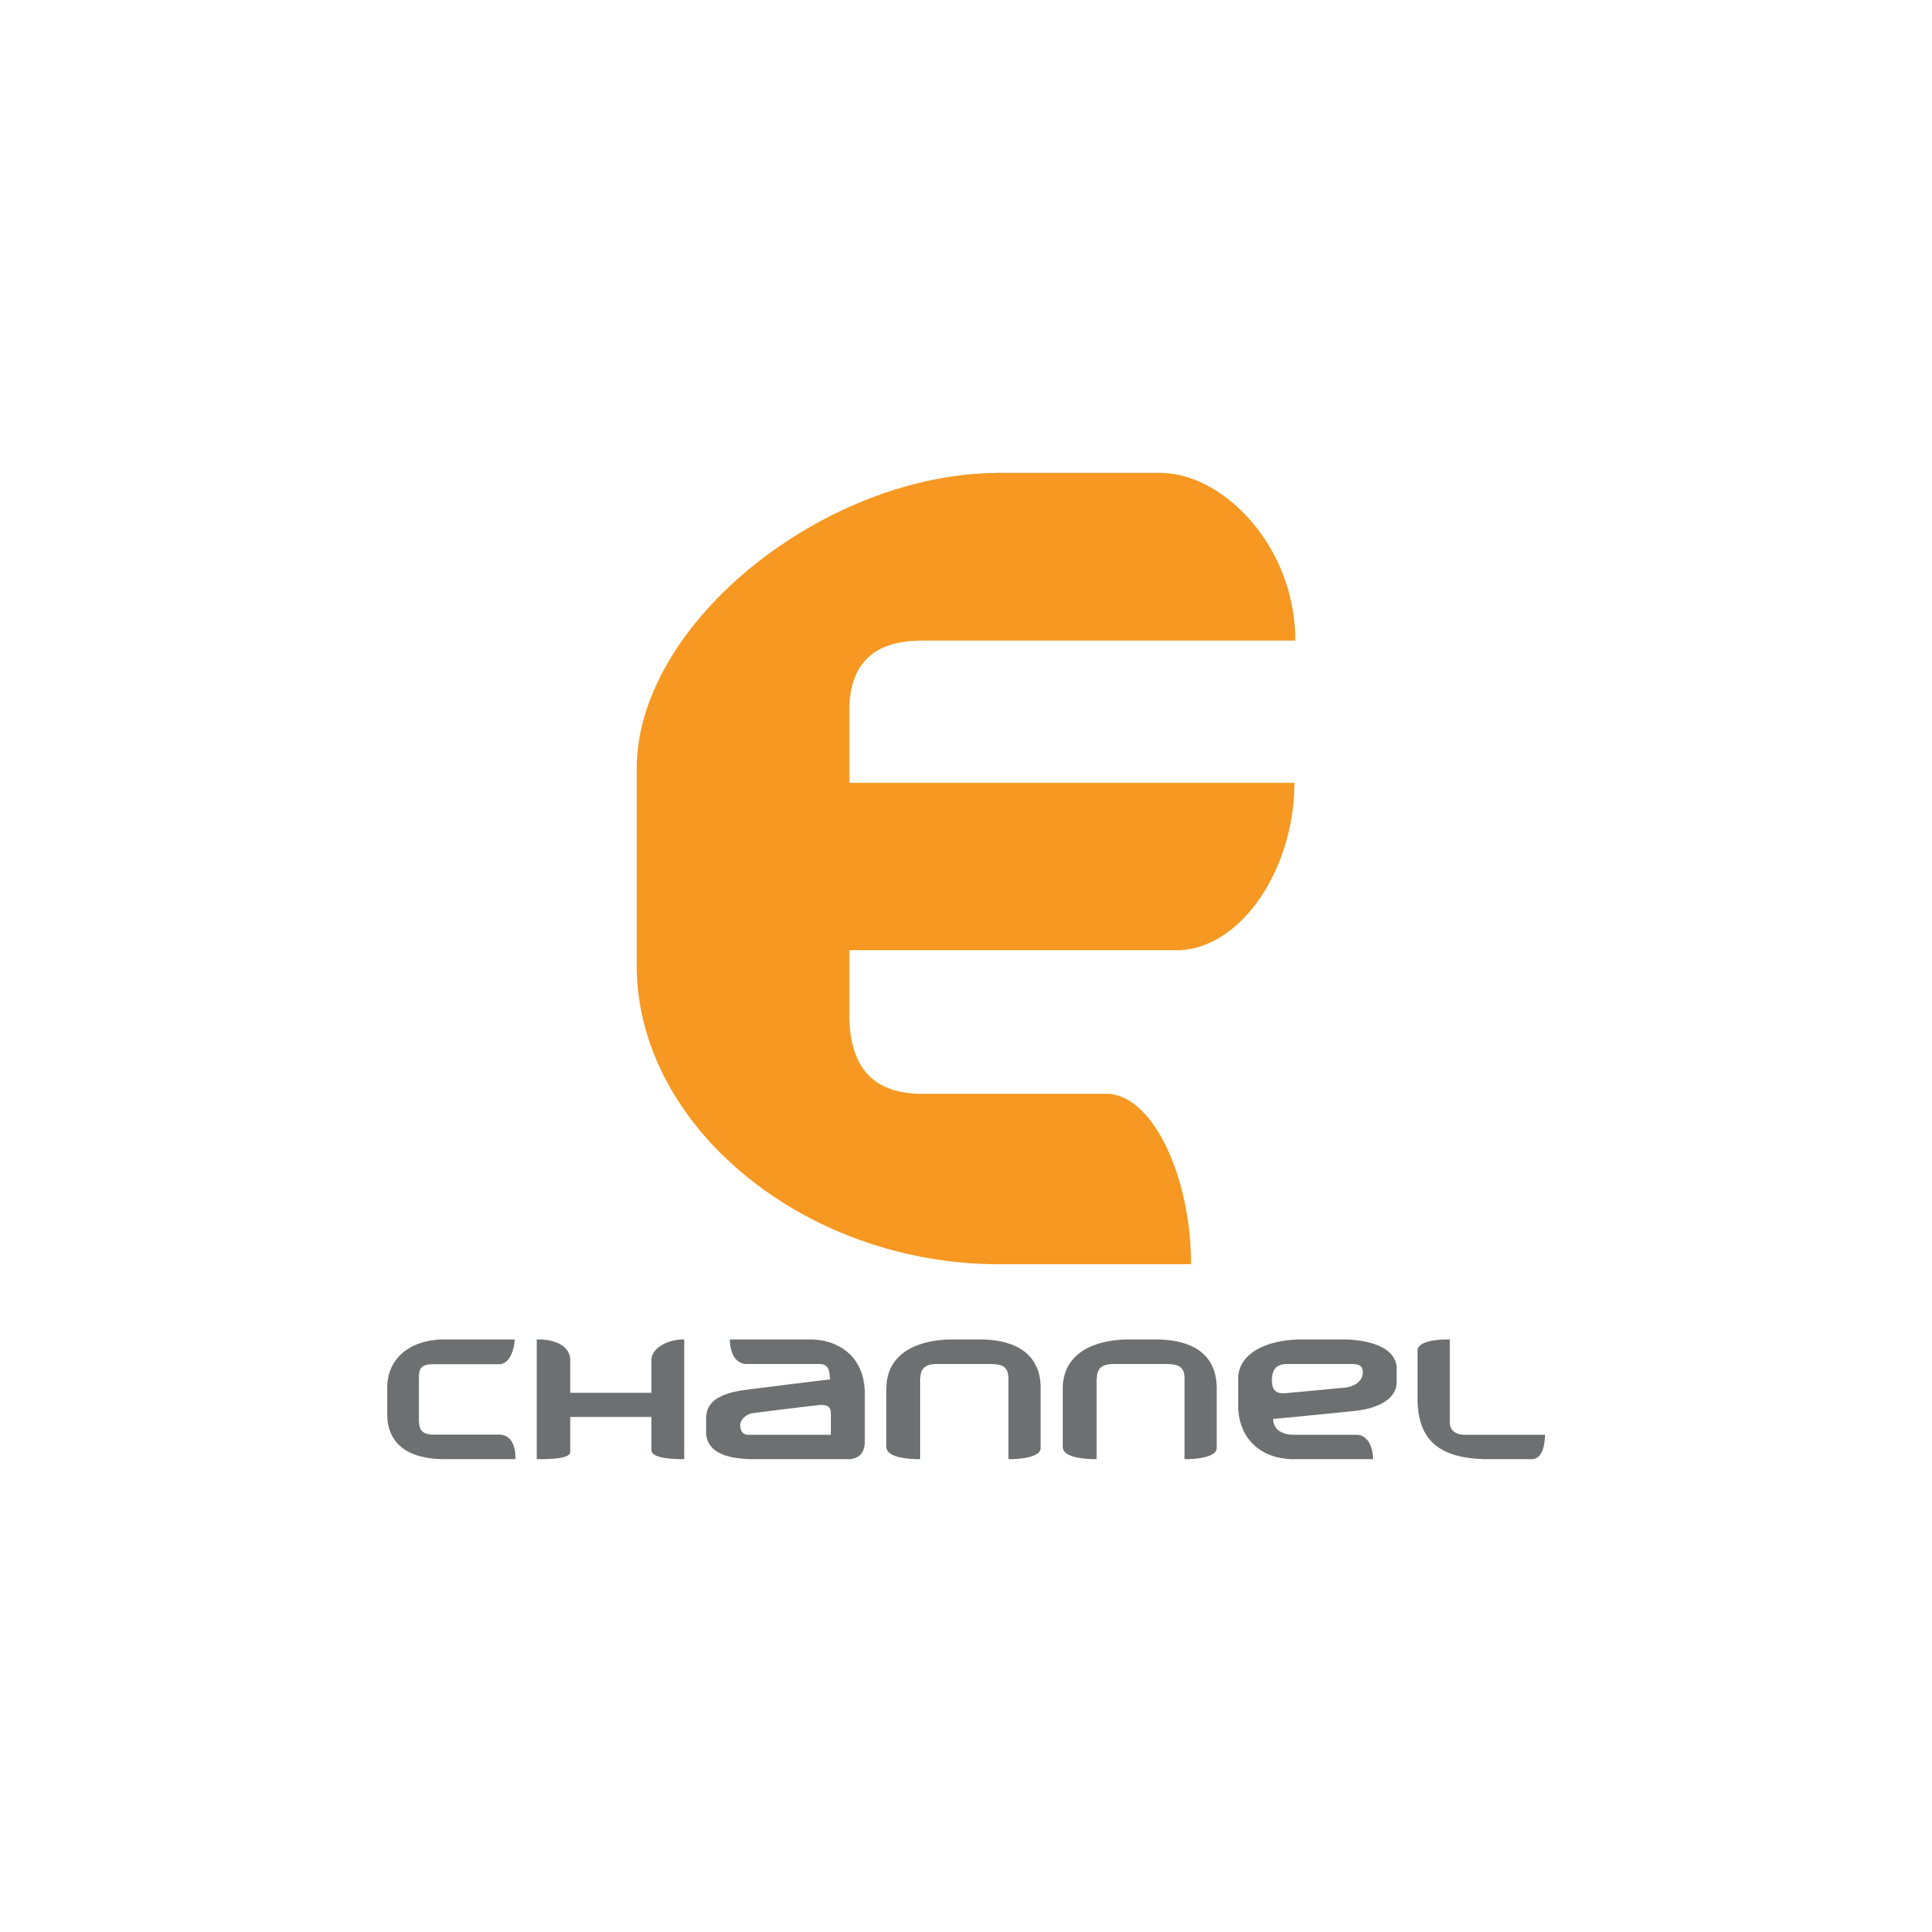 echannel Media